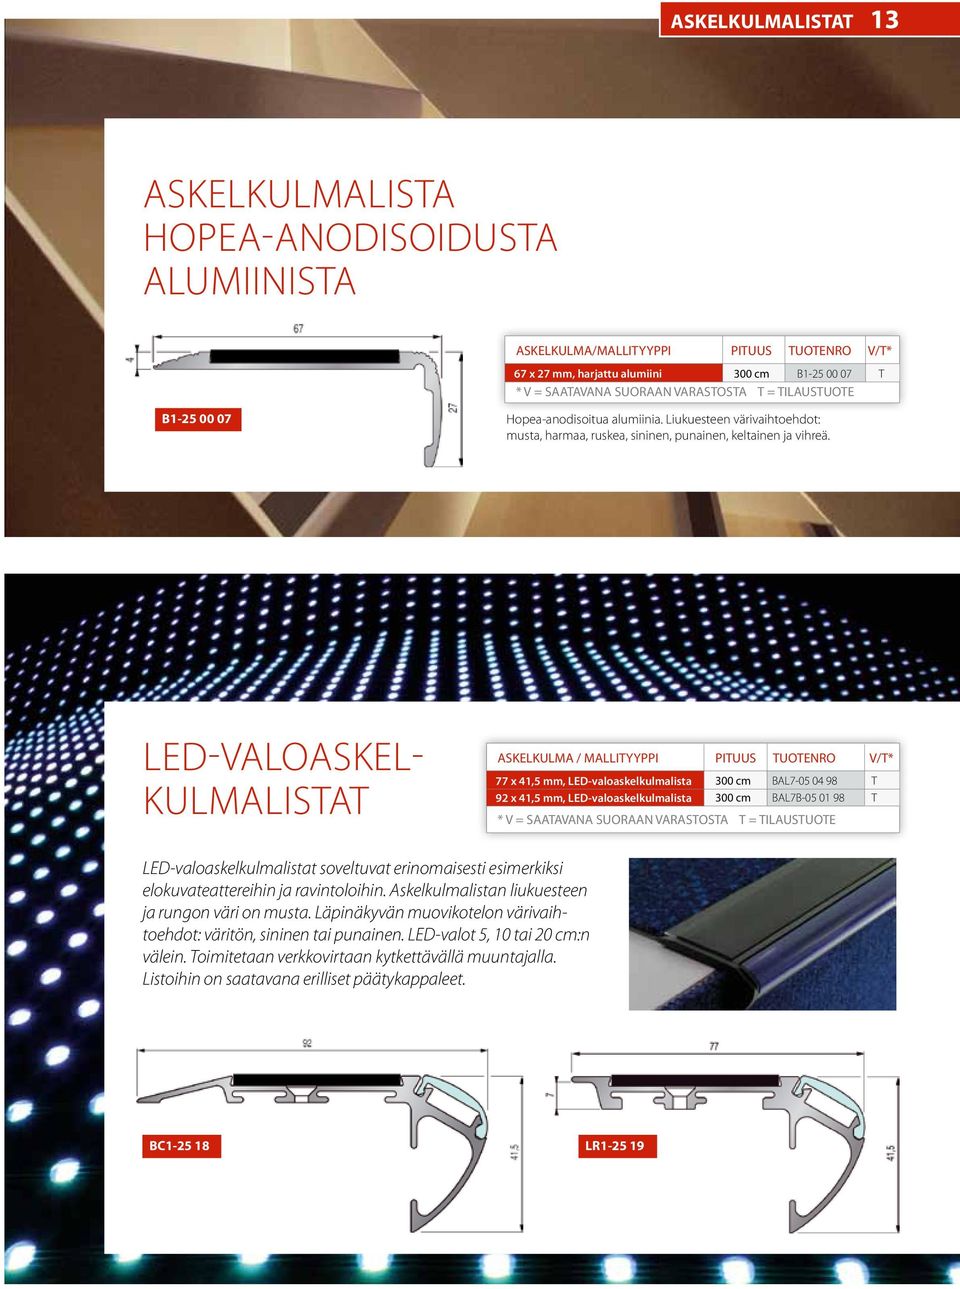 LED-ALOASKEL- KULMALISA ASKELKULMA / mallityyppi pituus tuotenro v/t* 77 x 41,5 mm, LED-valoaskelkulmalista 92 x 41,5 mm, LED-valoaskelkulmalista BAL7-05 04 98 BAL7B-05 01 98 * = saatavana suoraan